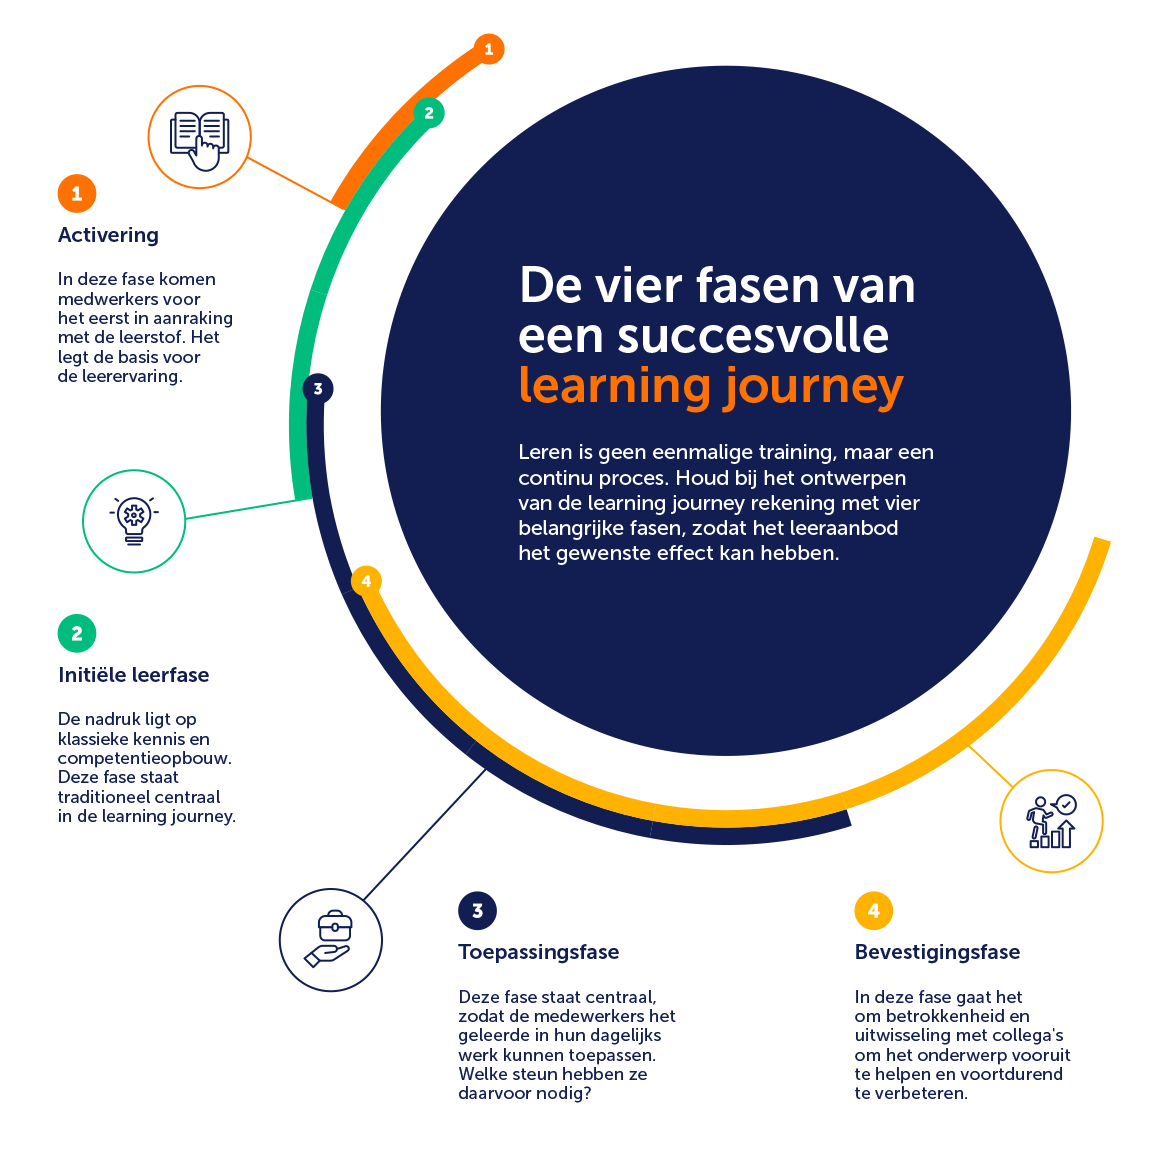 De vier fasen van een succesvolle learning journey